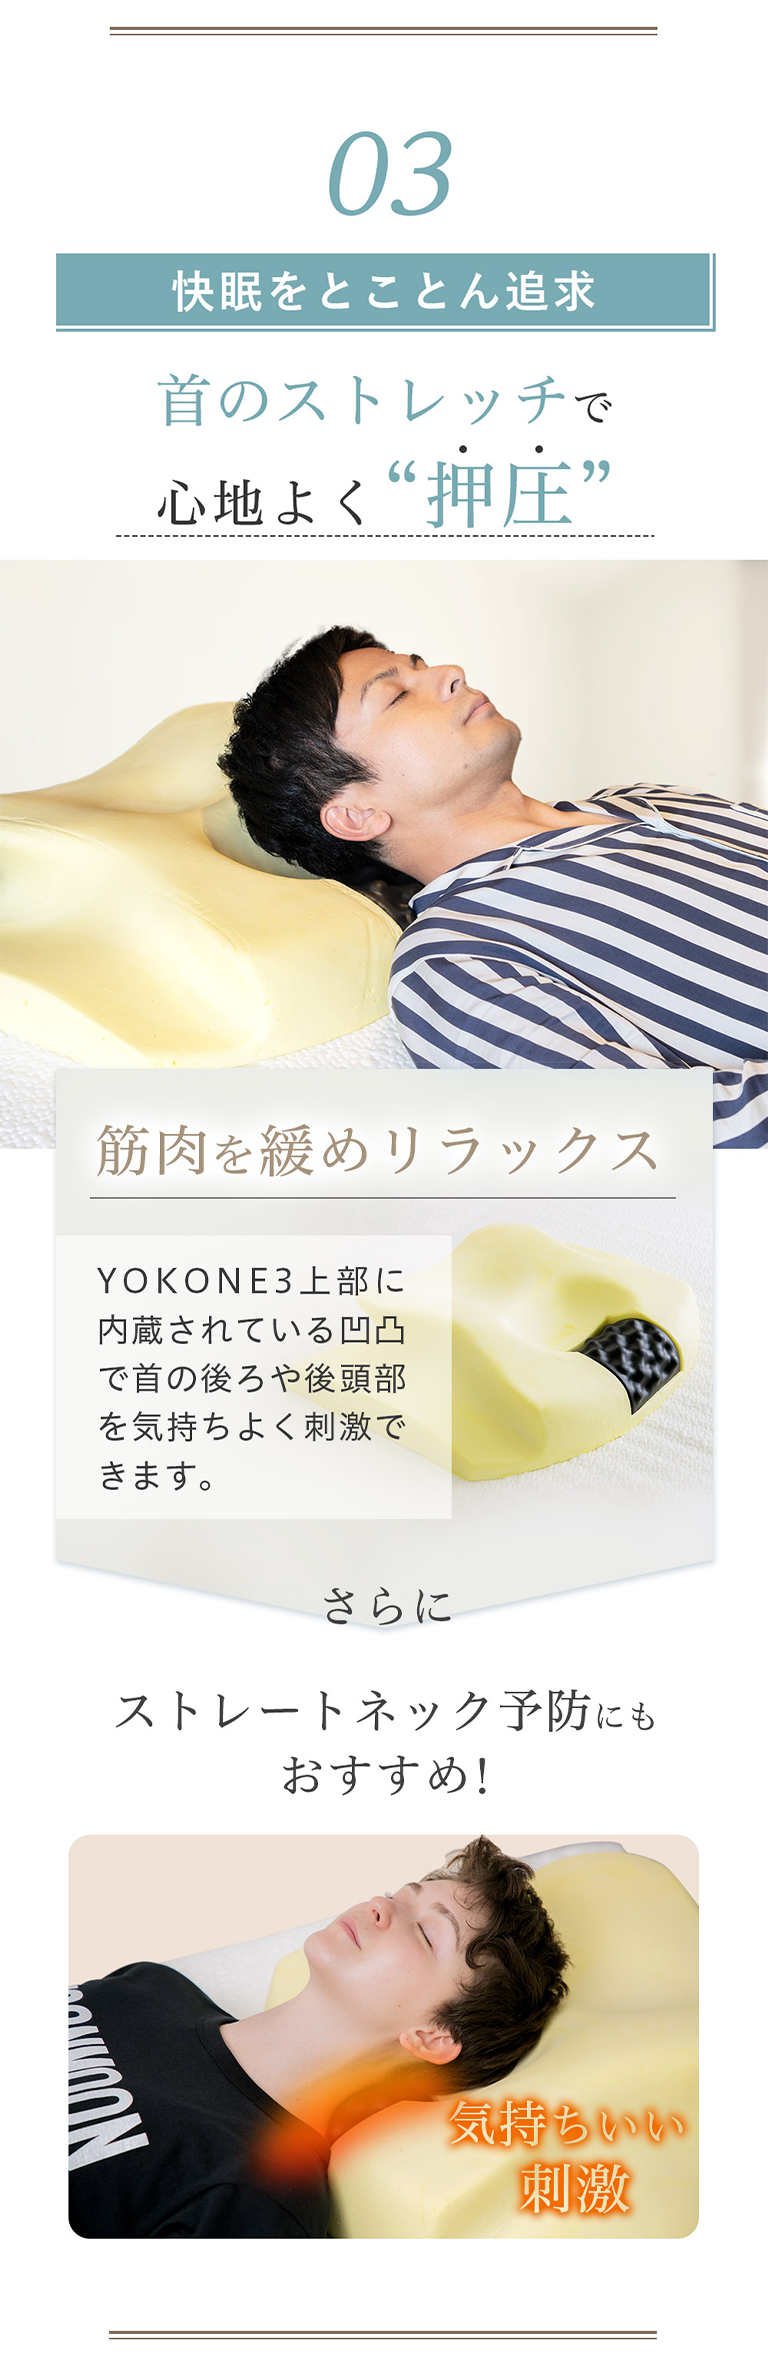 横向き寝用枕 YOKONE3 いびき防止 医師推奨の呼吸が深くなる枕 